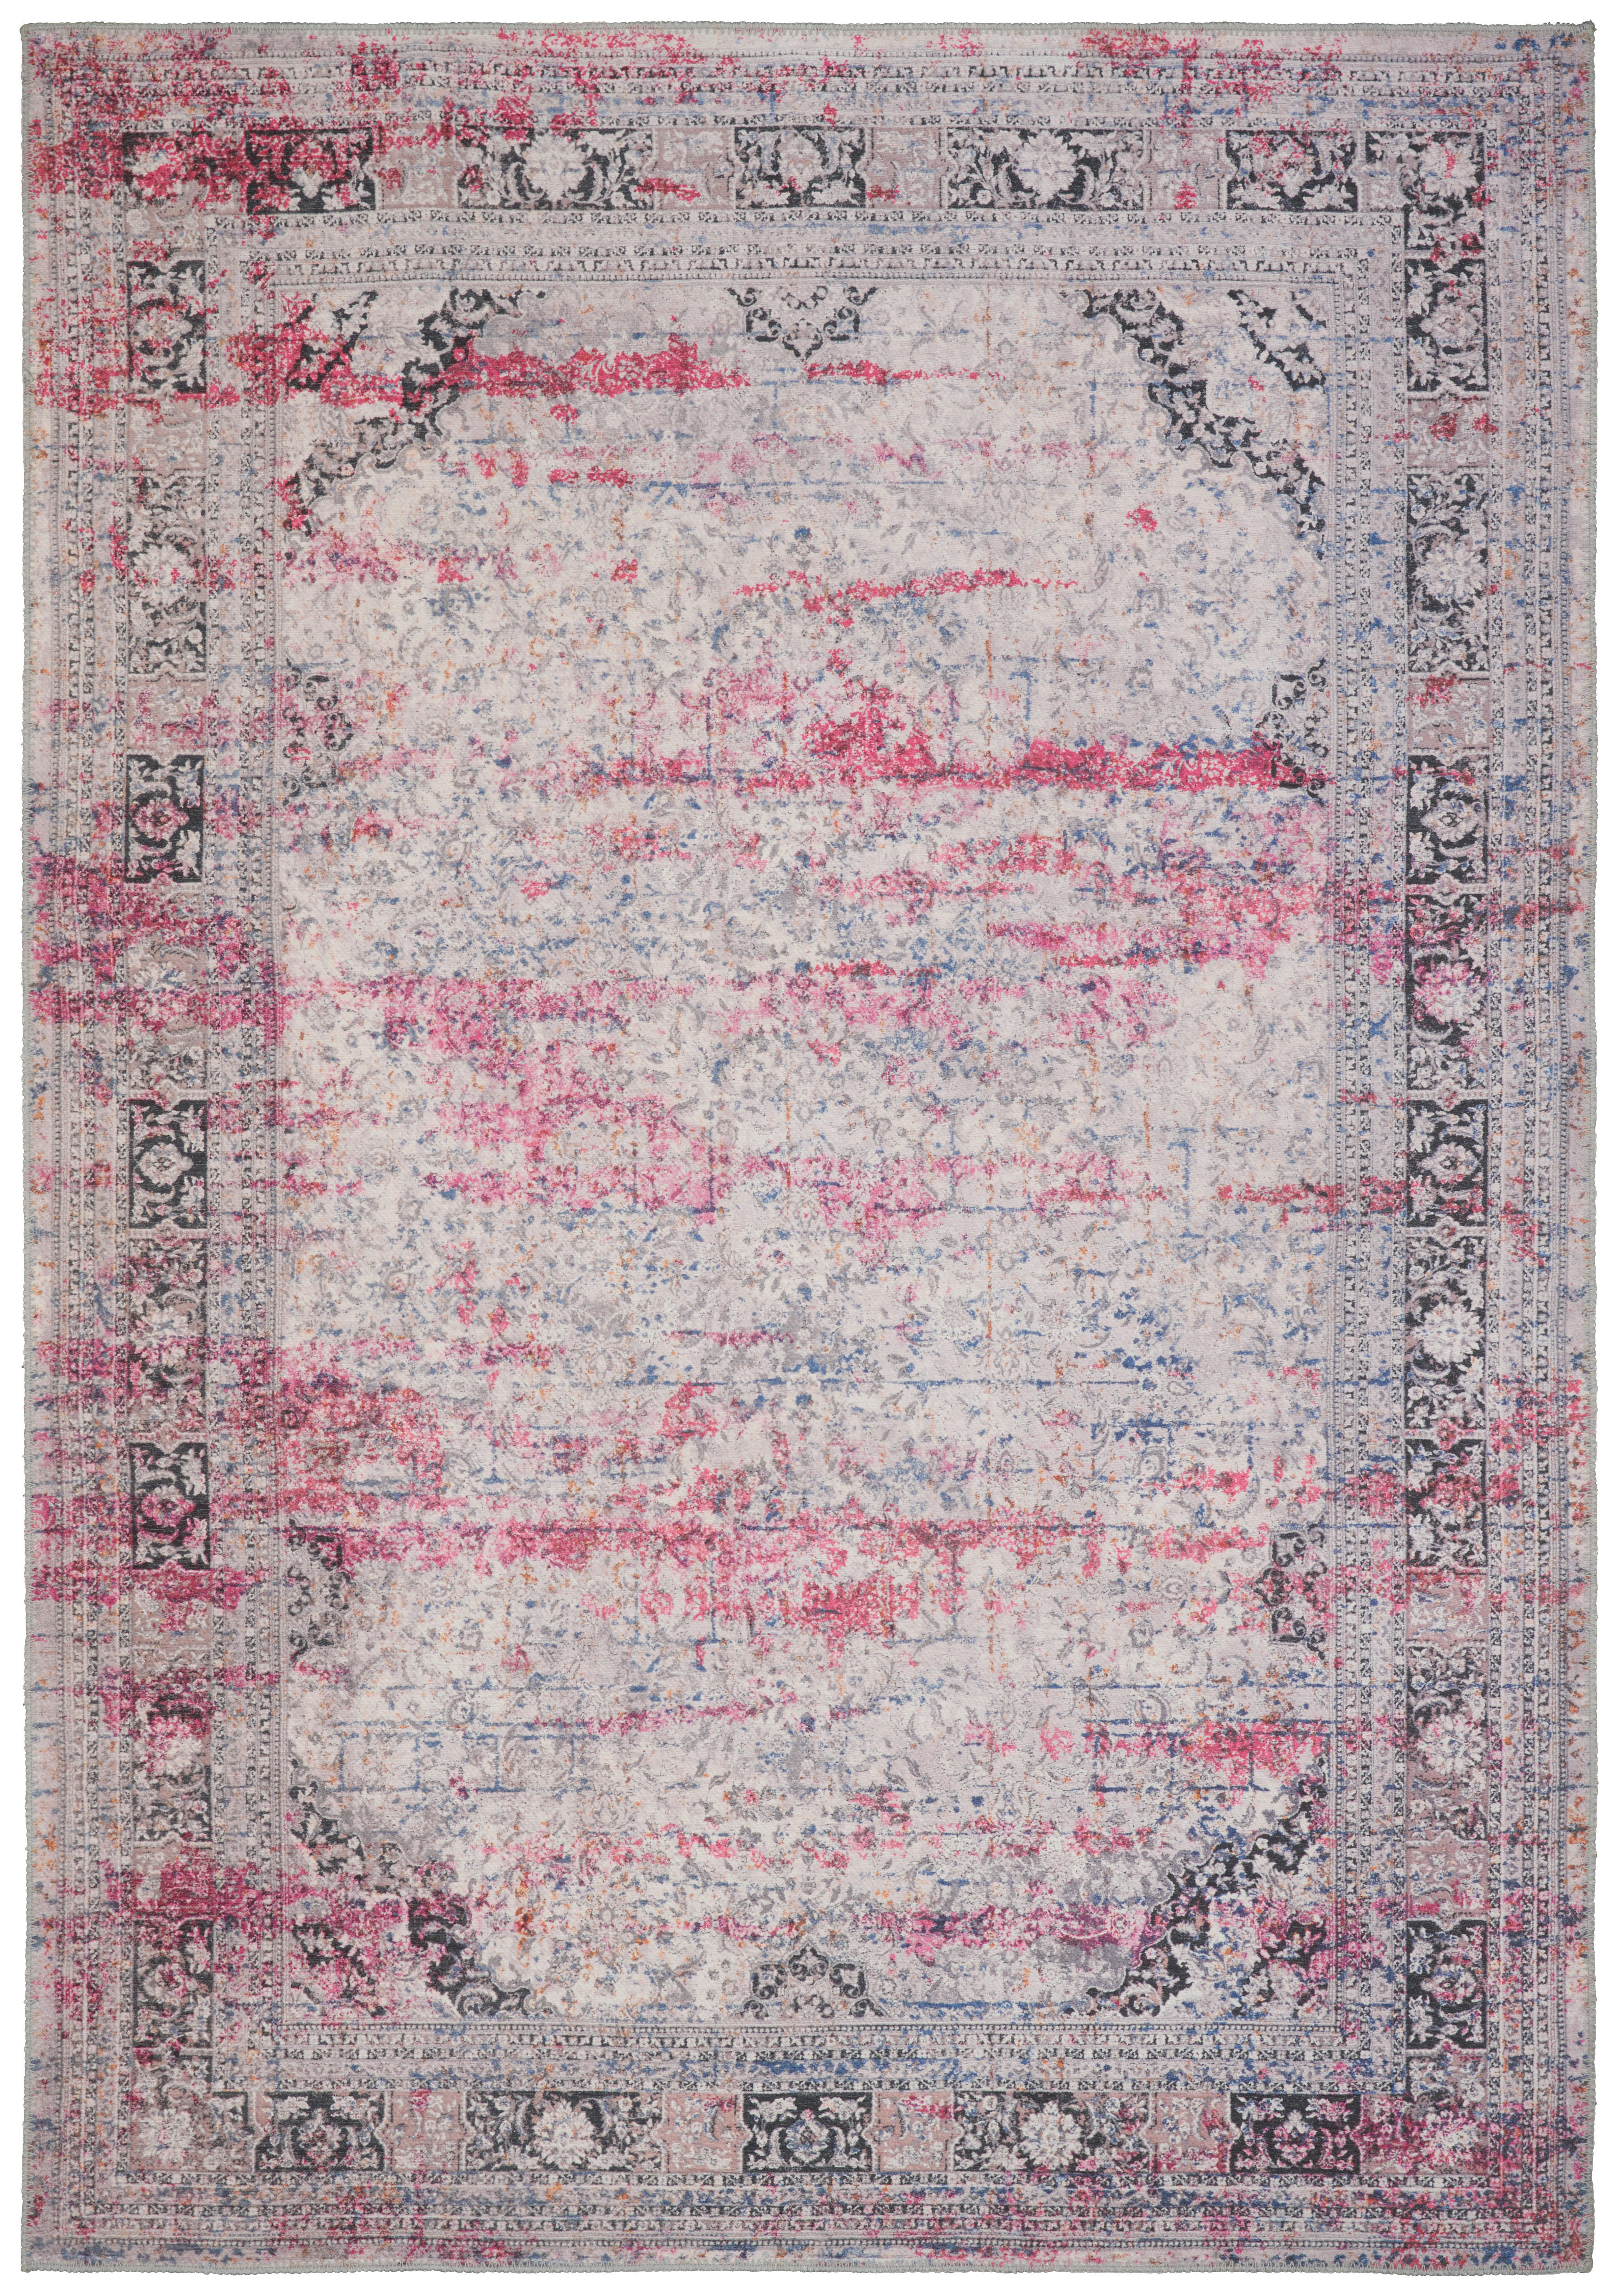 Novel VINTAGE KOBEREC, 130/190 cm, pink - pink - textil